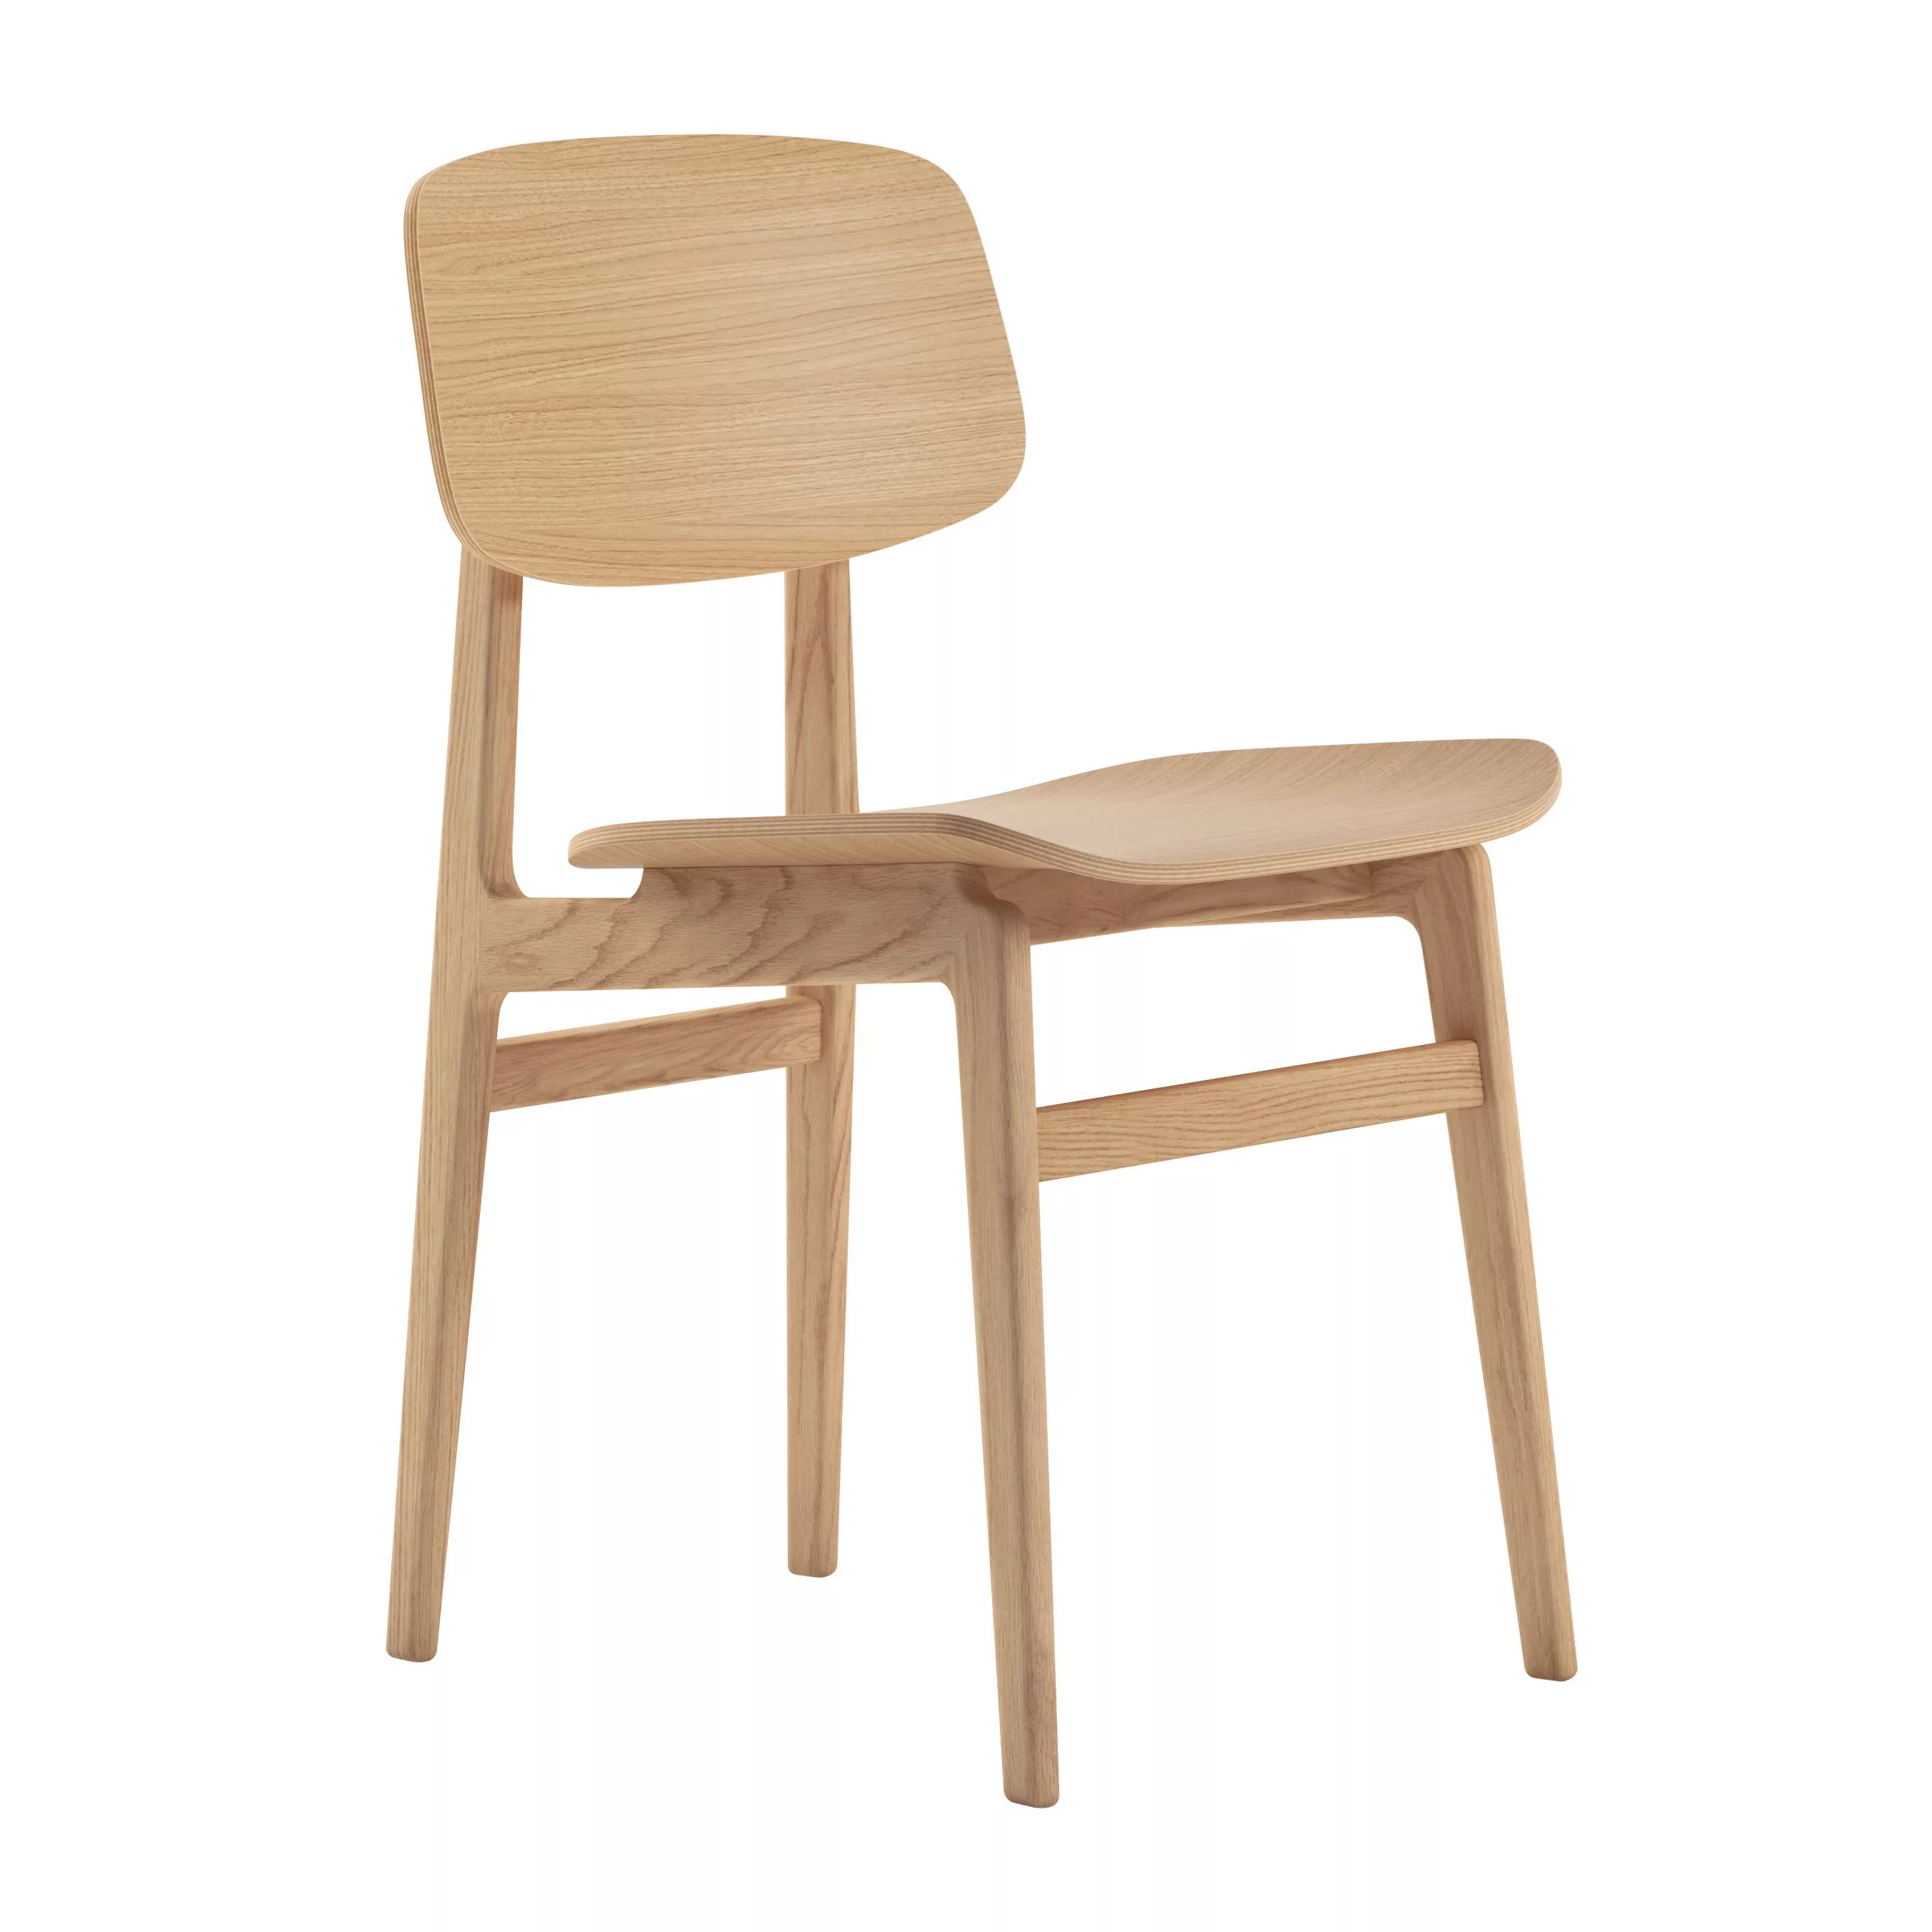 NORR 11 - NY11 Dining Chair - natur/Eiche laminiert furniert/BxHxT 45,5x78x günstig online kaufen